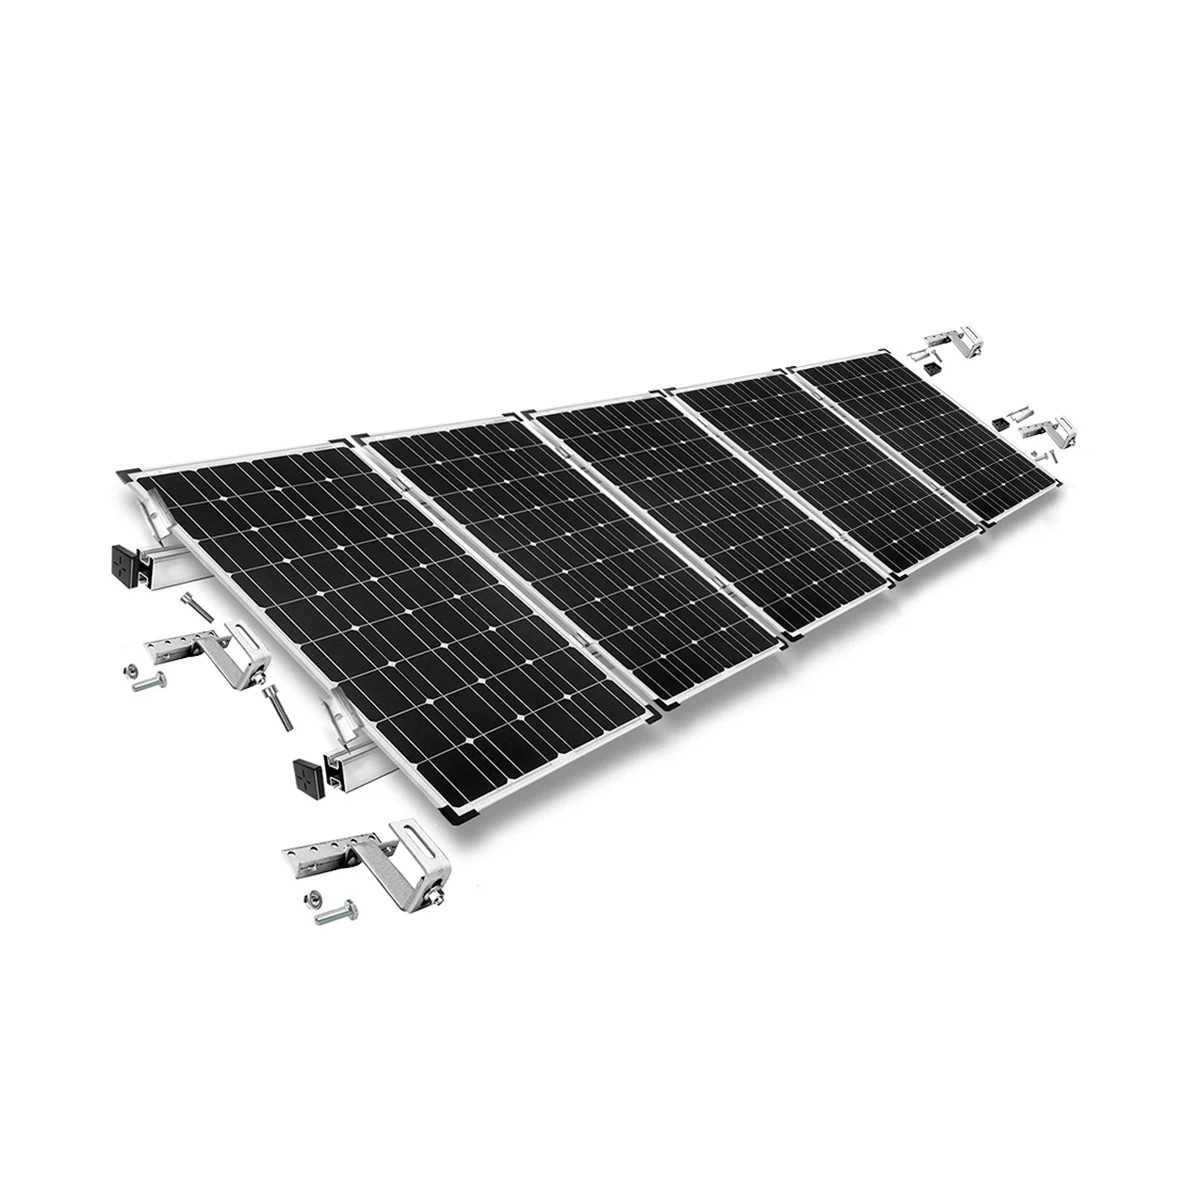 Kit di montaggio h30 regolabile con staffe per tetto (per tegole) per tetto inclinato 5 pannelli solari frame 30 mm